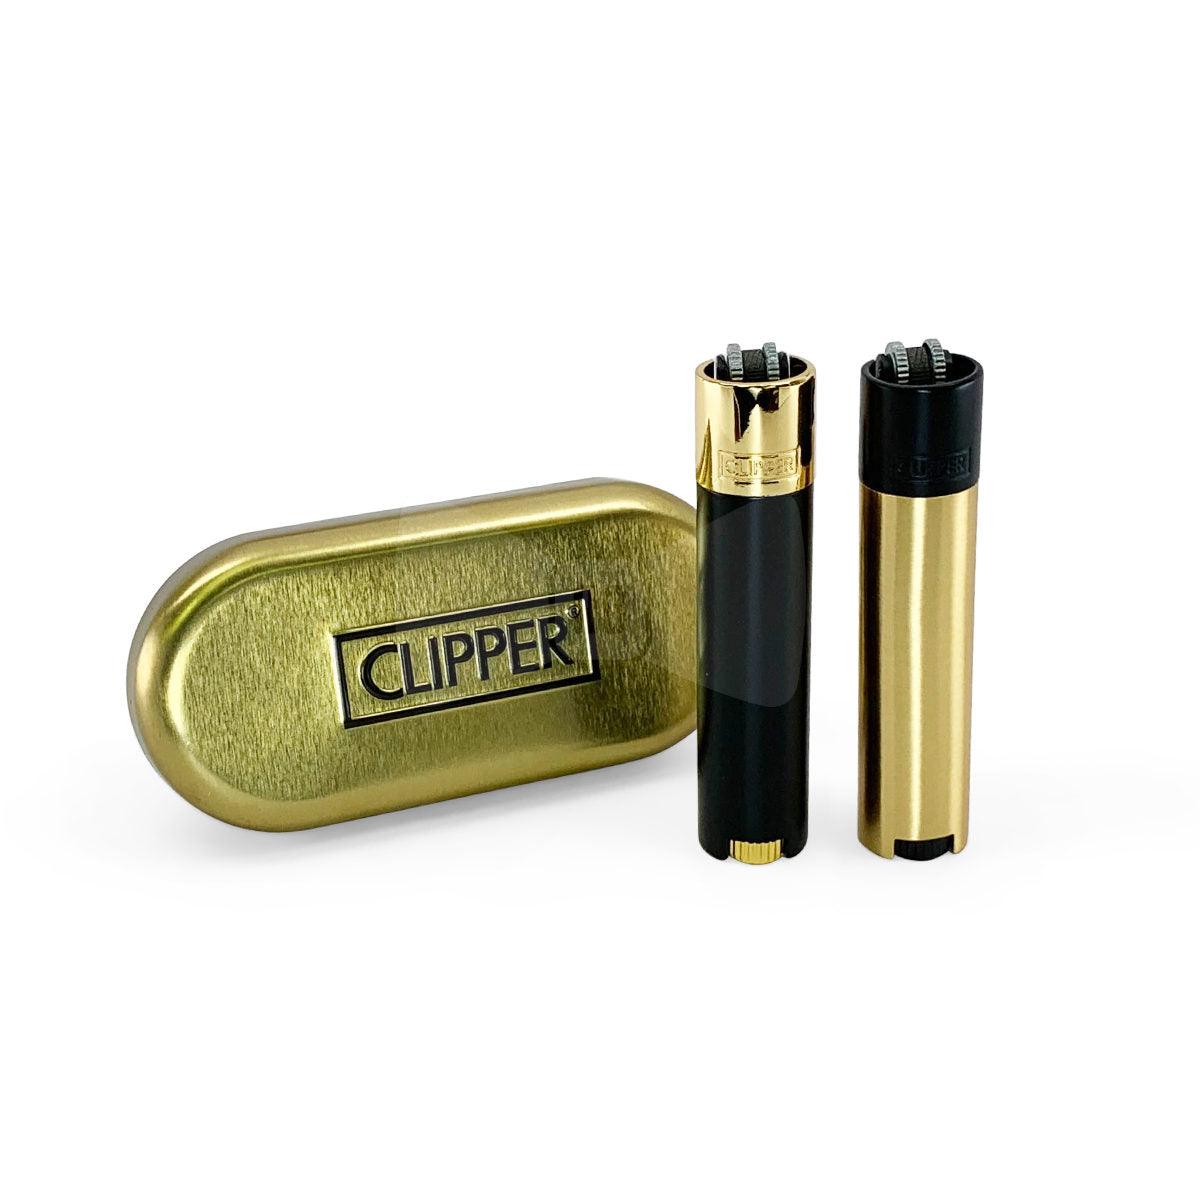 Clipper | Fancy Lighter | Black & Gold - Wild Leaf